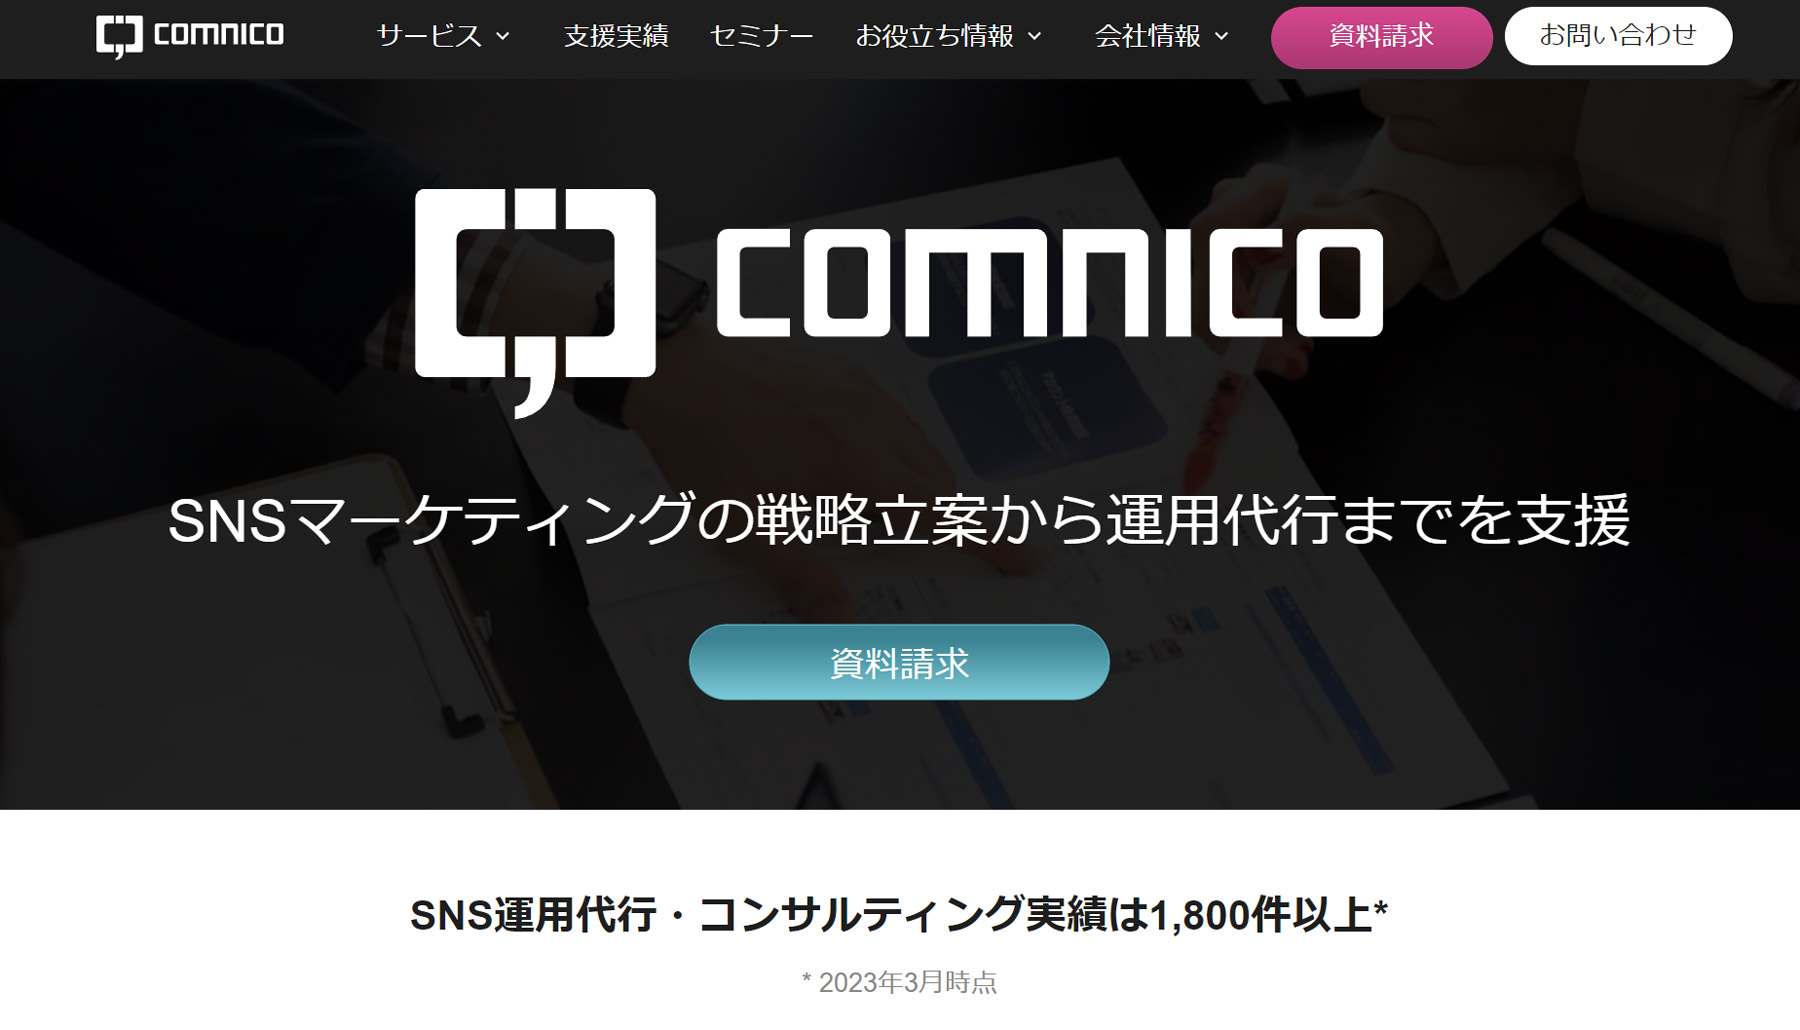 株式会社コムニコ公式Webサイト